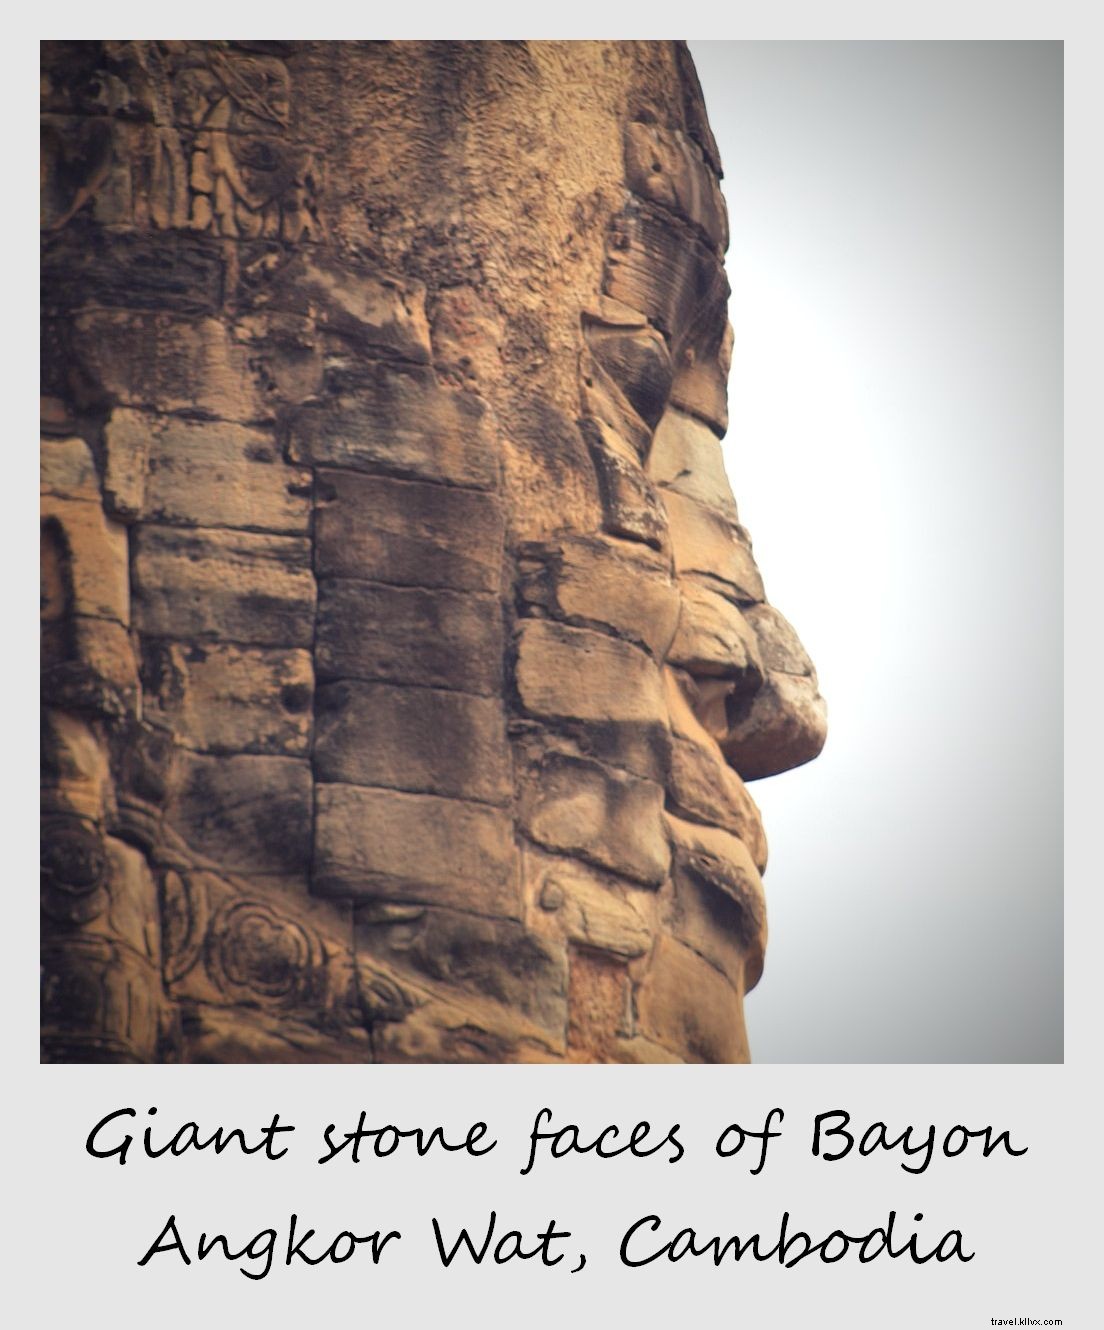 Polaroid de la semana:Cara de piedra gigante de Bayon | Angkor Wat, Camboya